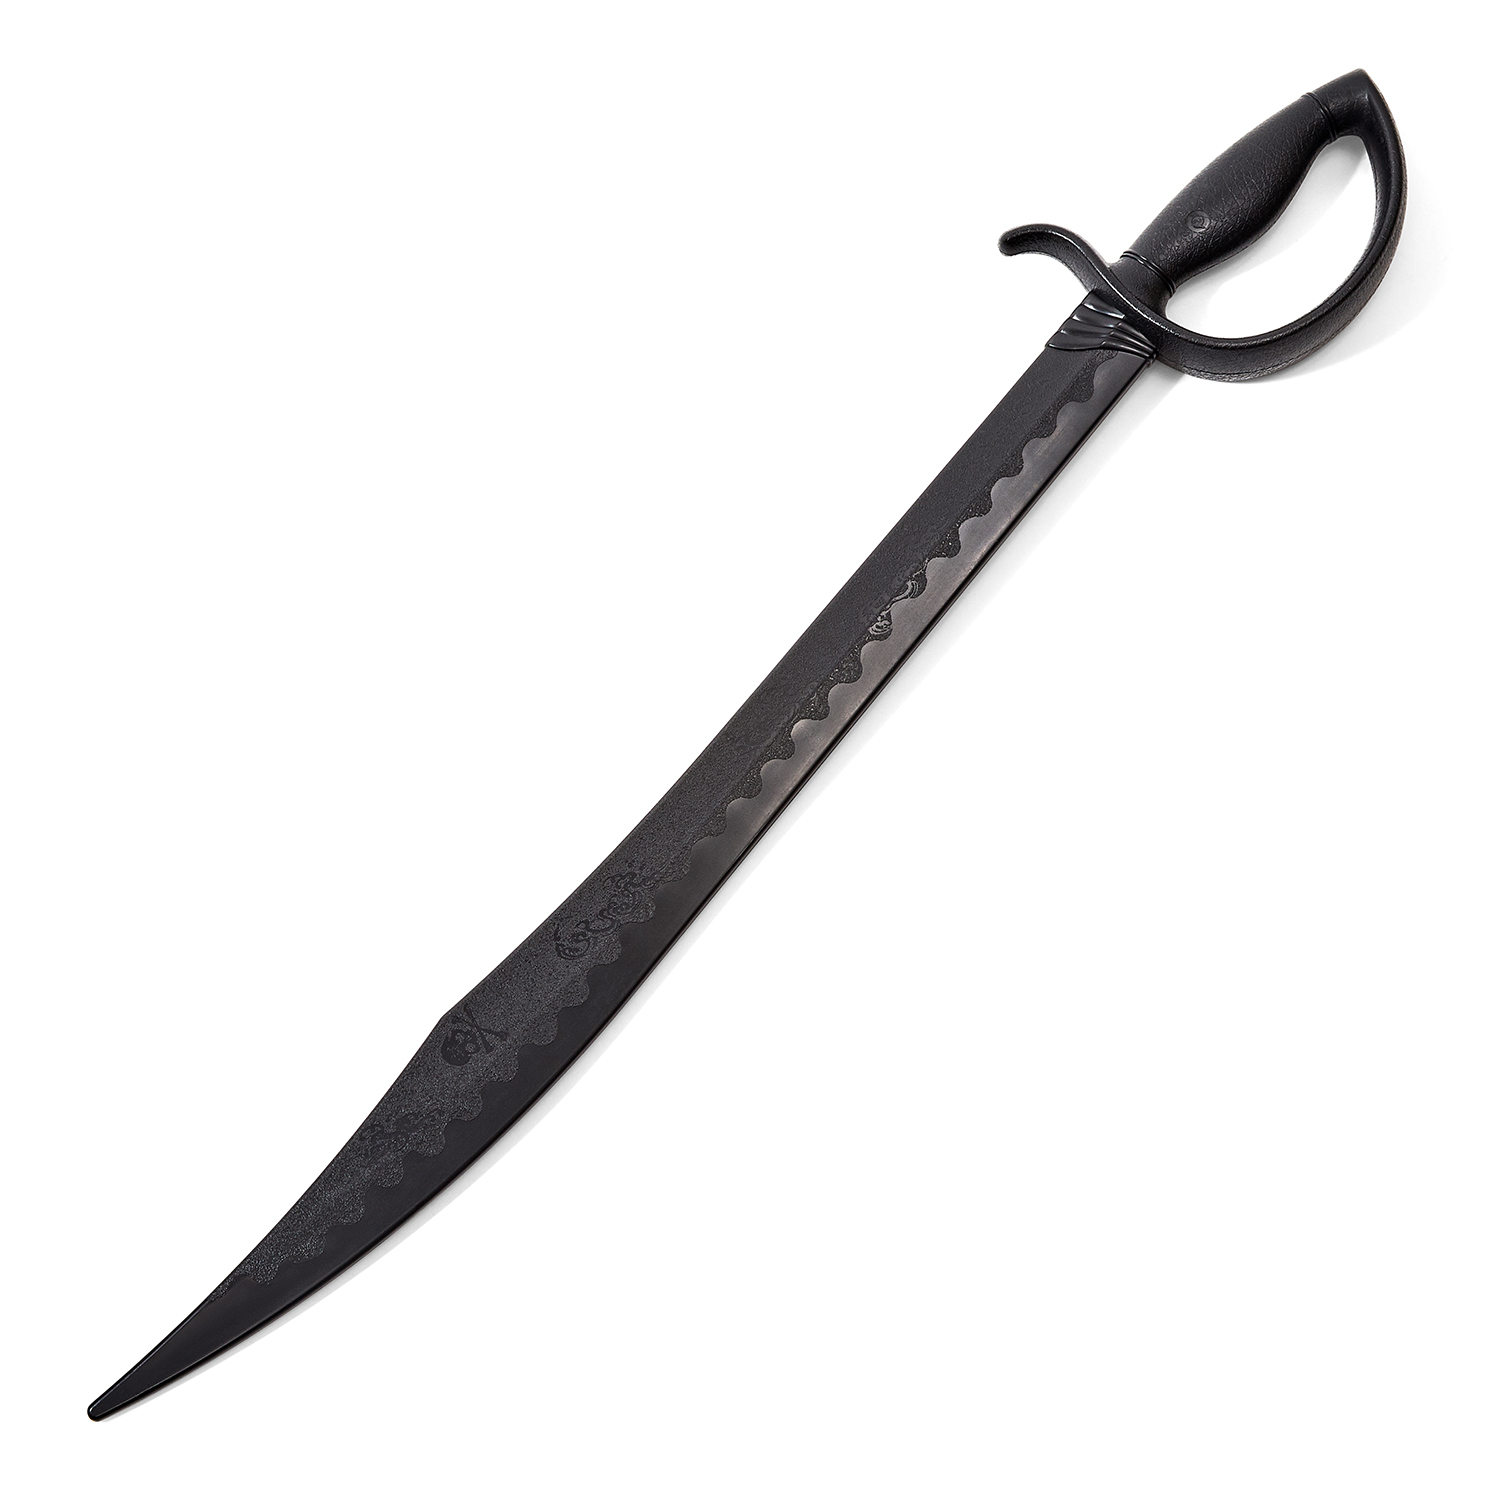 Black Polypropylene Pirate Cutless Sabre Sword - Click Image to Close